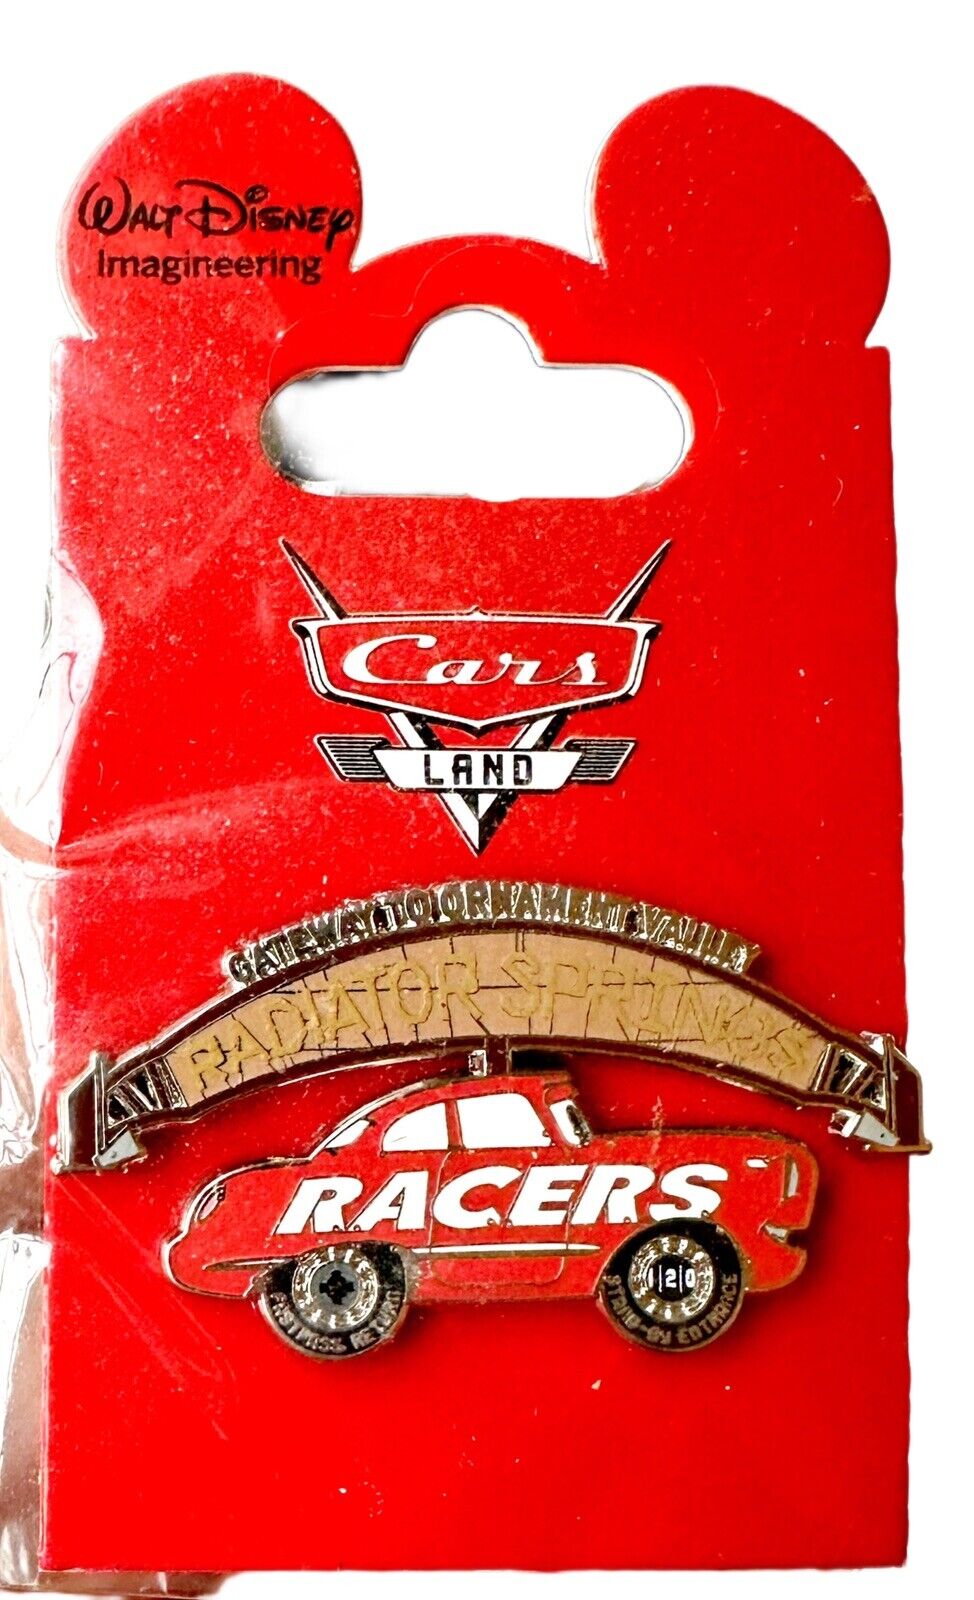 WDI Radiator Springs Cars Land Racers disney pin